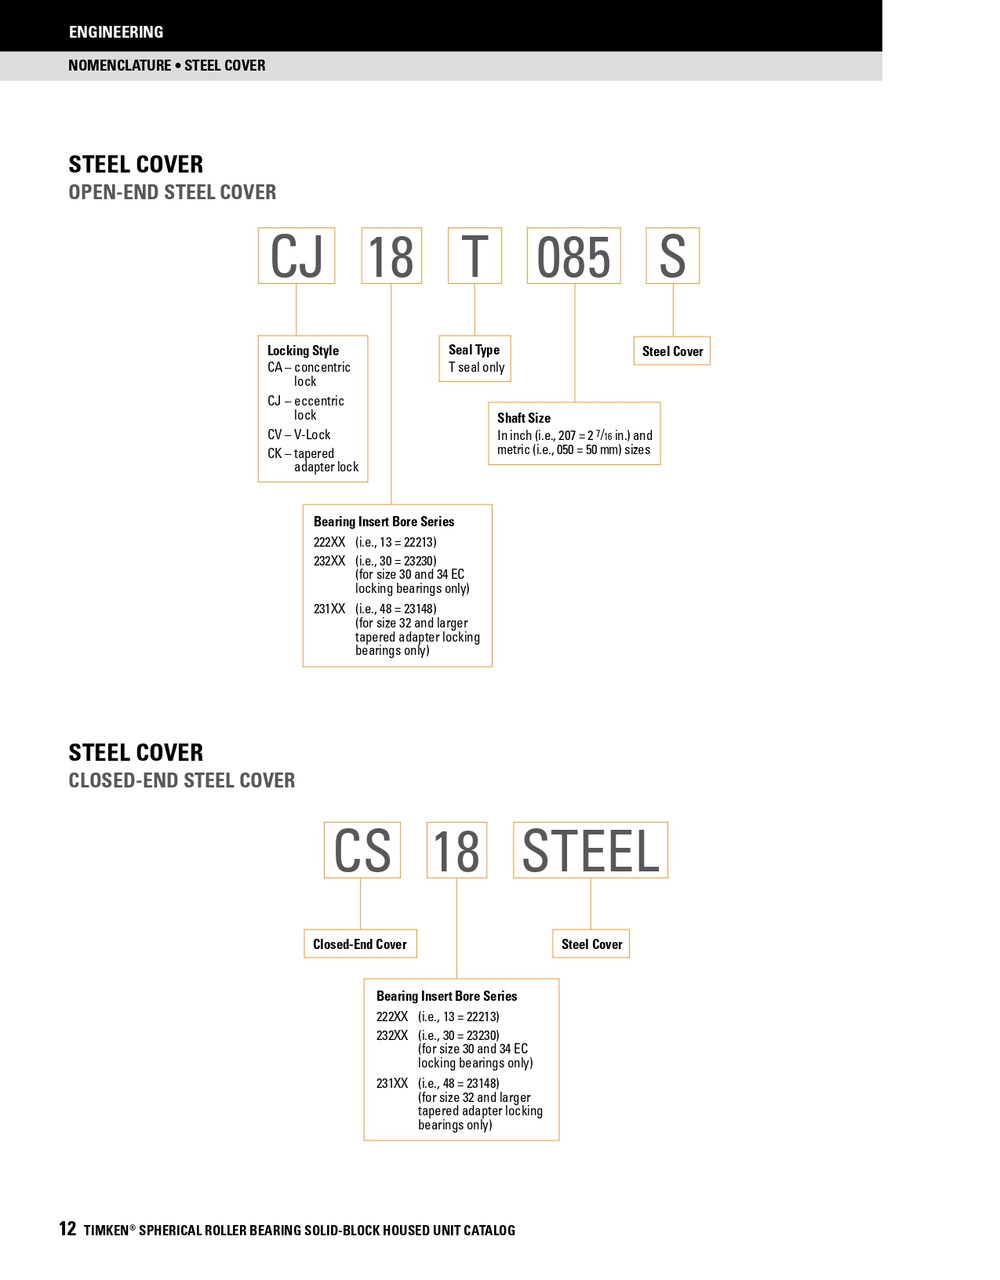 1-15/16" Timken SRB Steel Open End Cover w/Teflon Seal - TA/DV Taper Lock Bushing Type  CK11T115S